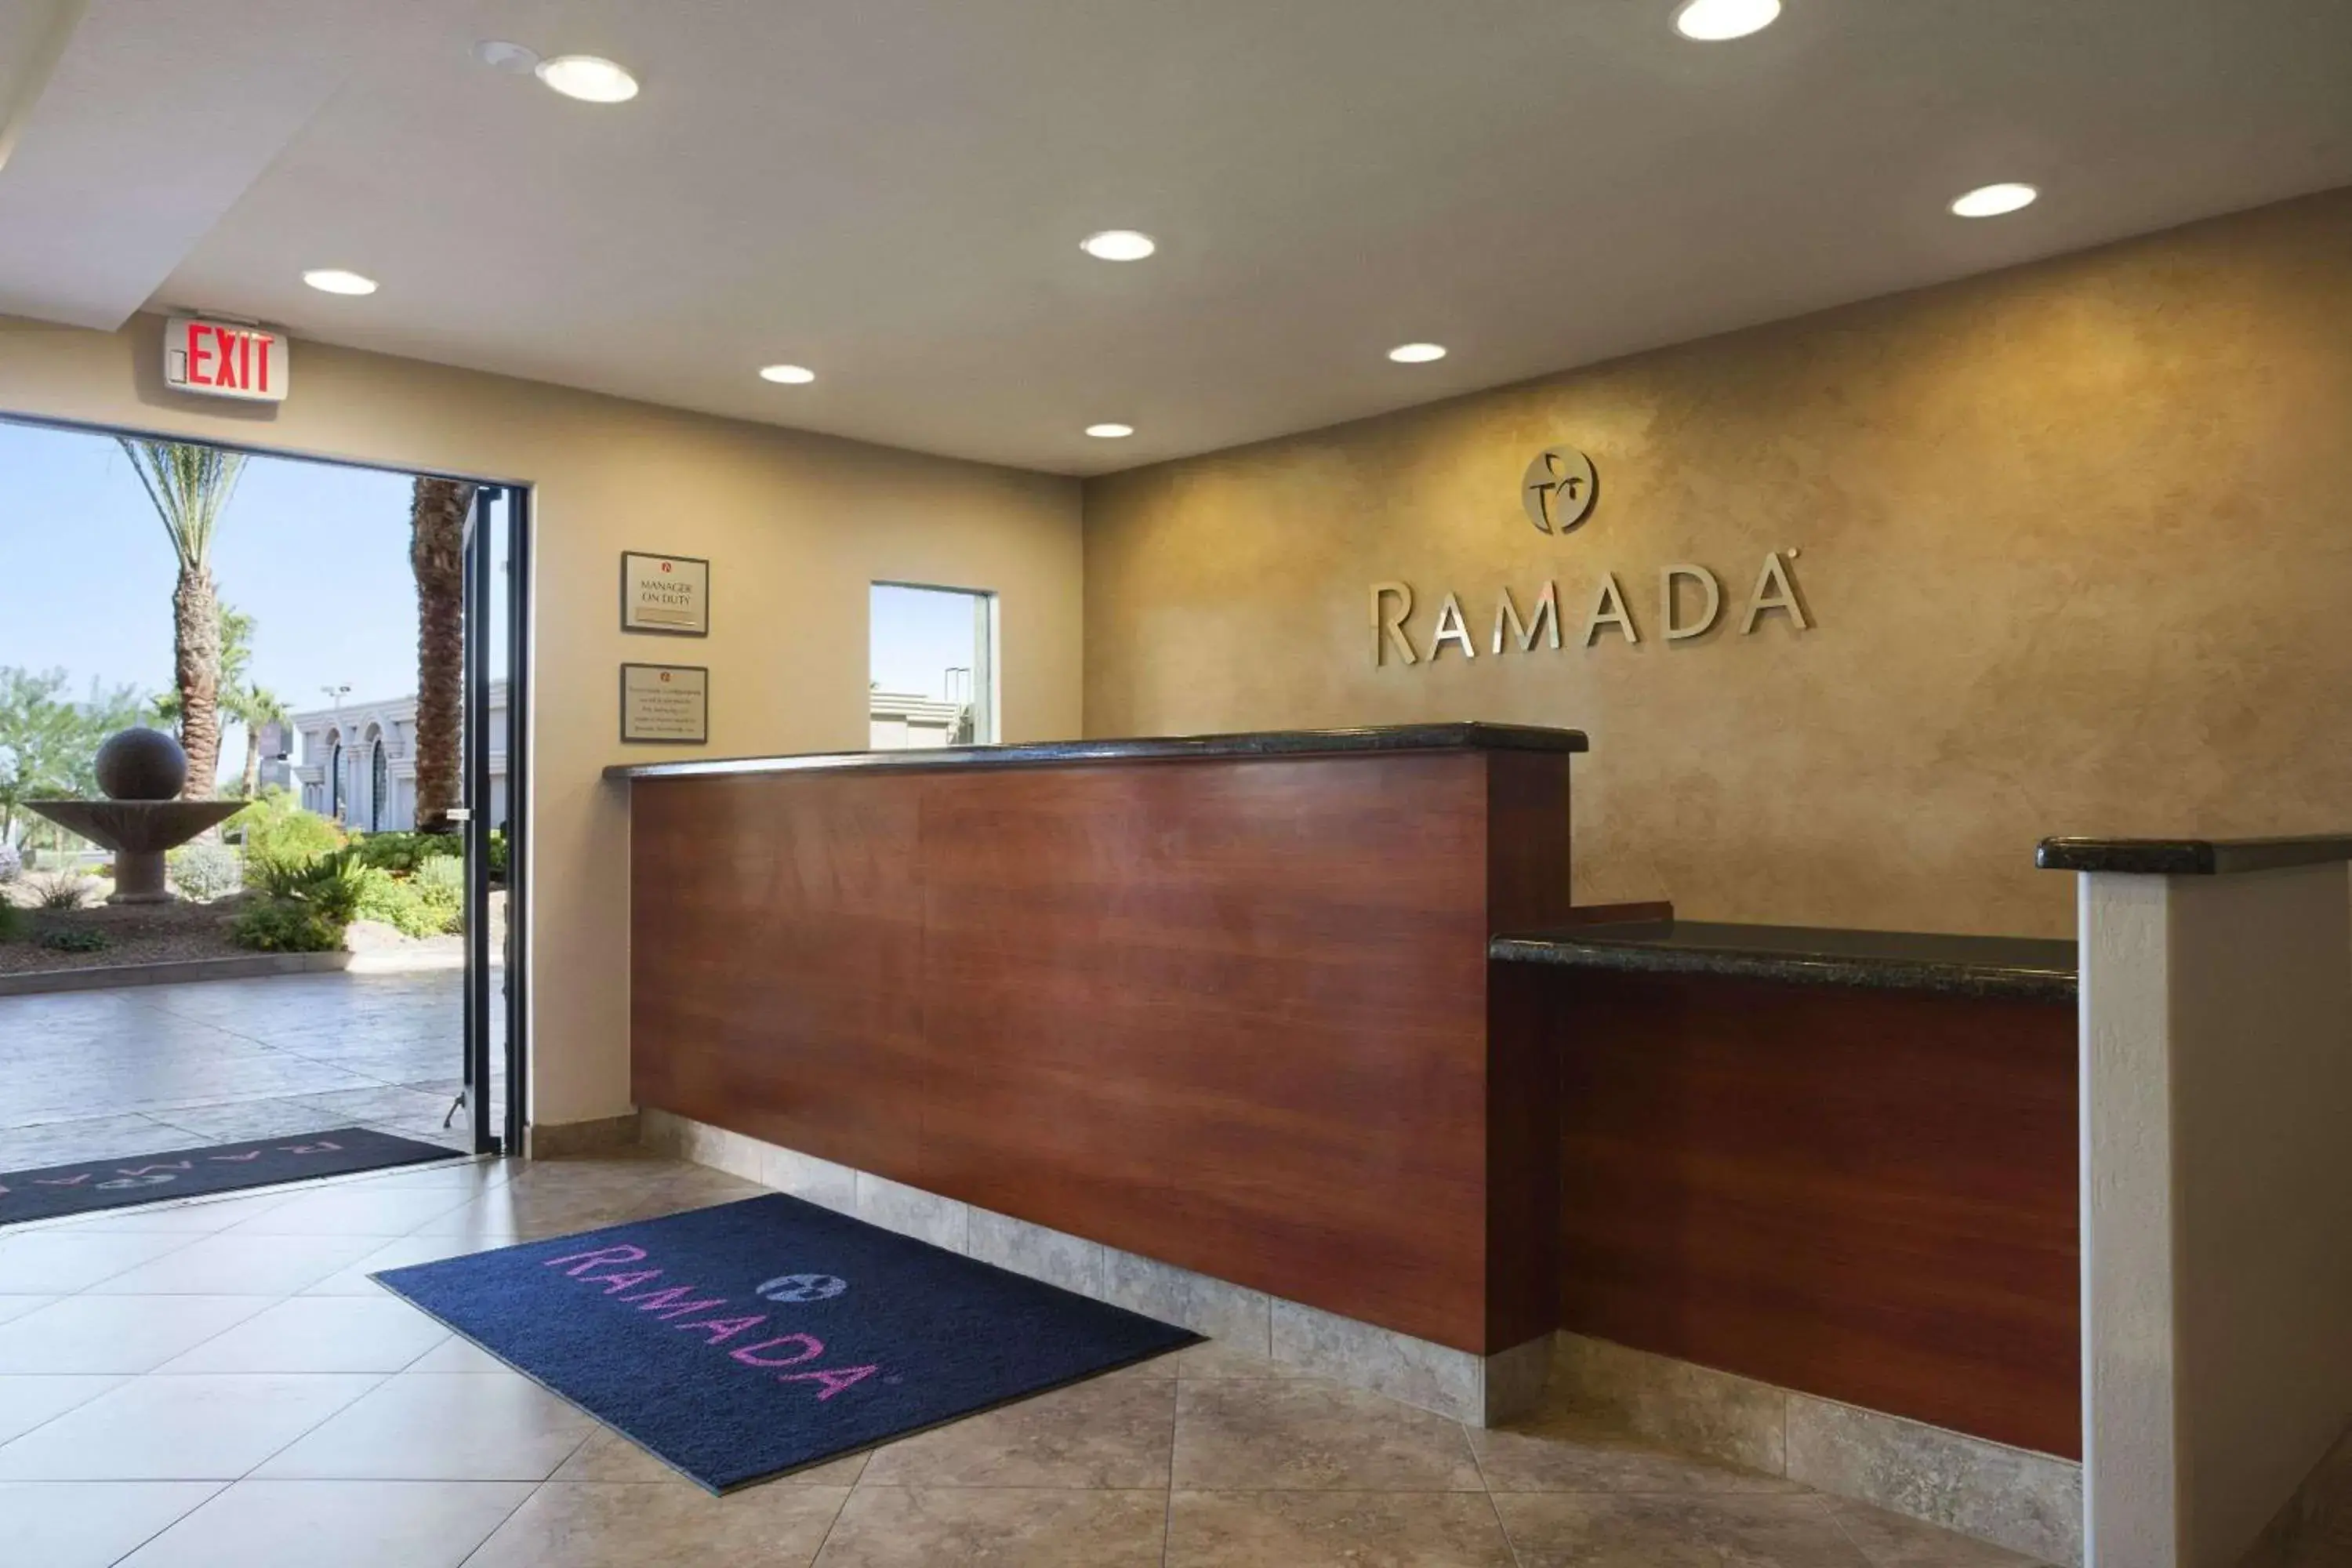 Lobby or reception, Lobby/Reception in Ramada by Wyndham Tempe/At Arizona Mills Mall